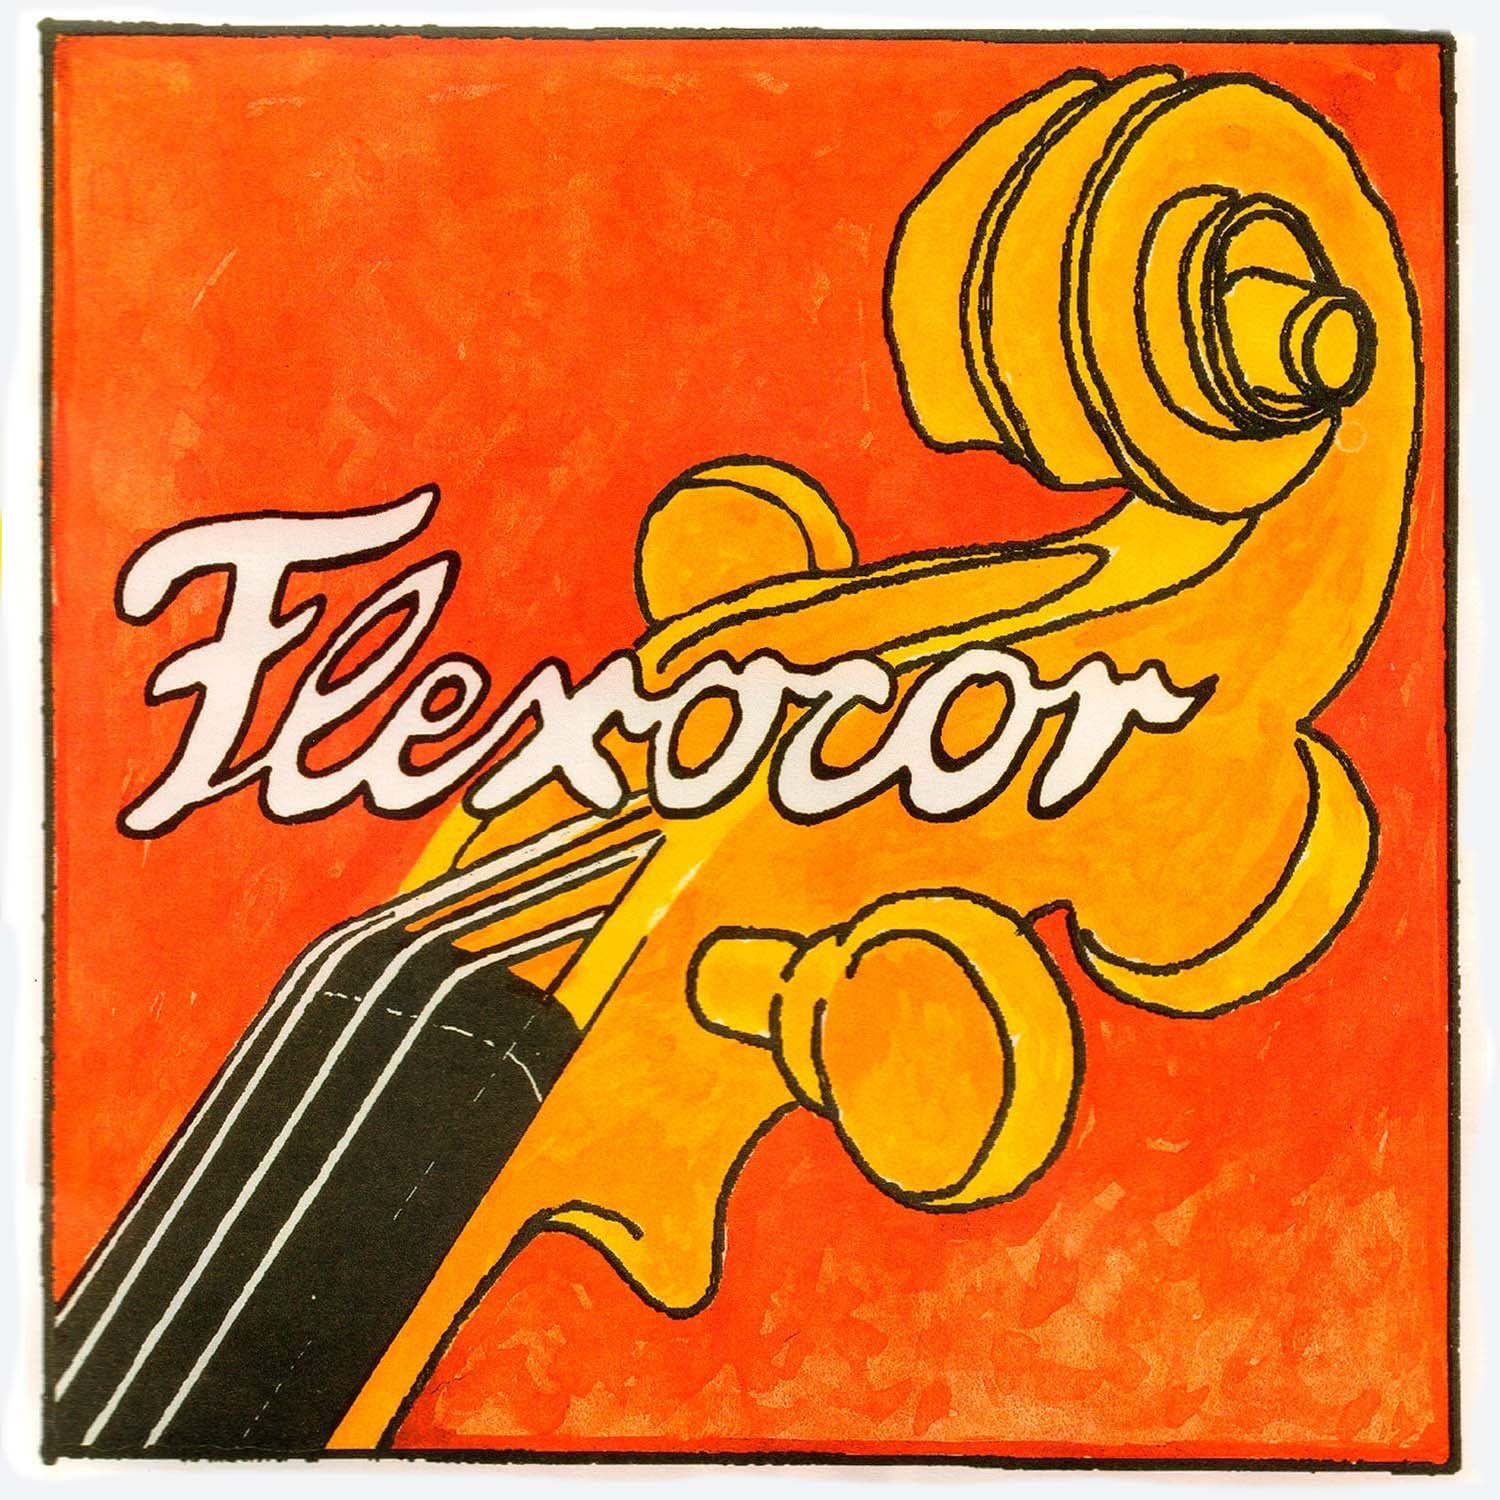 Pirastro Flexocor Cello G String